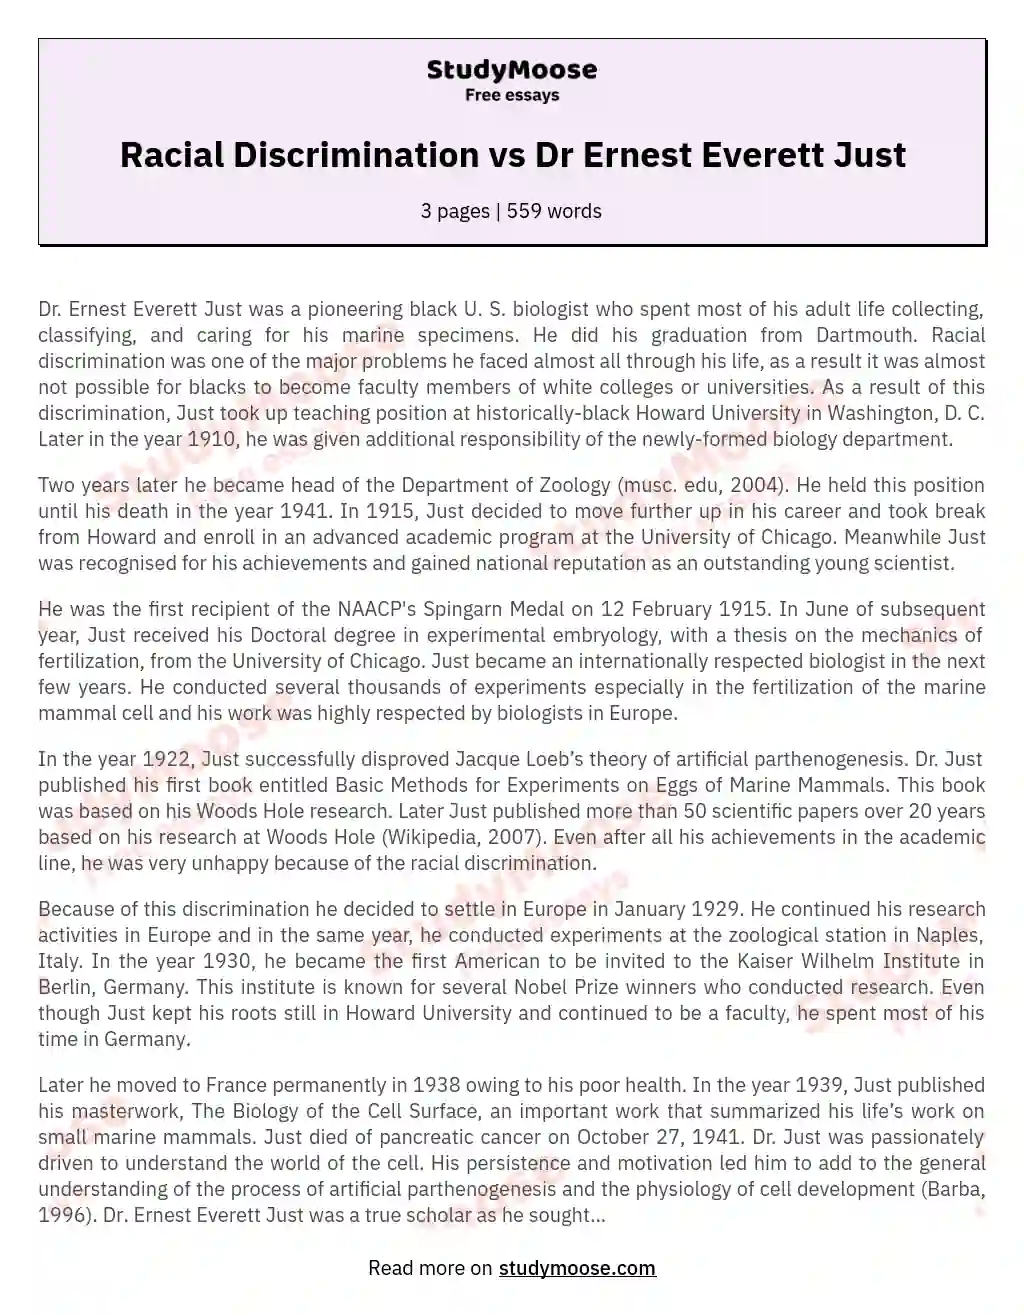 Racial Discrimination vs Dr Ernest Everett Just essay